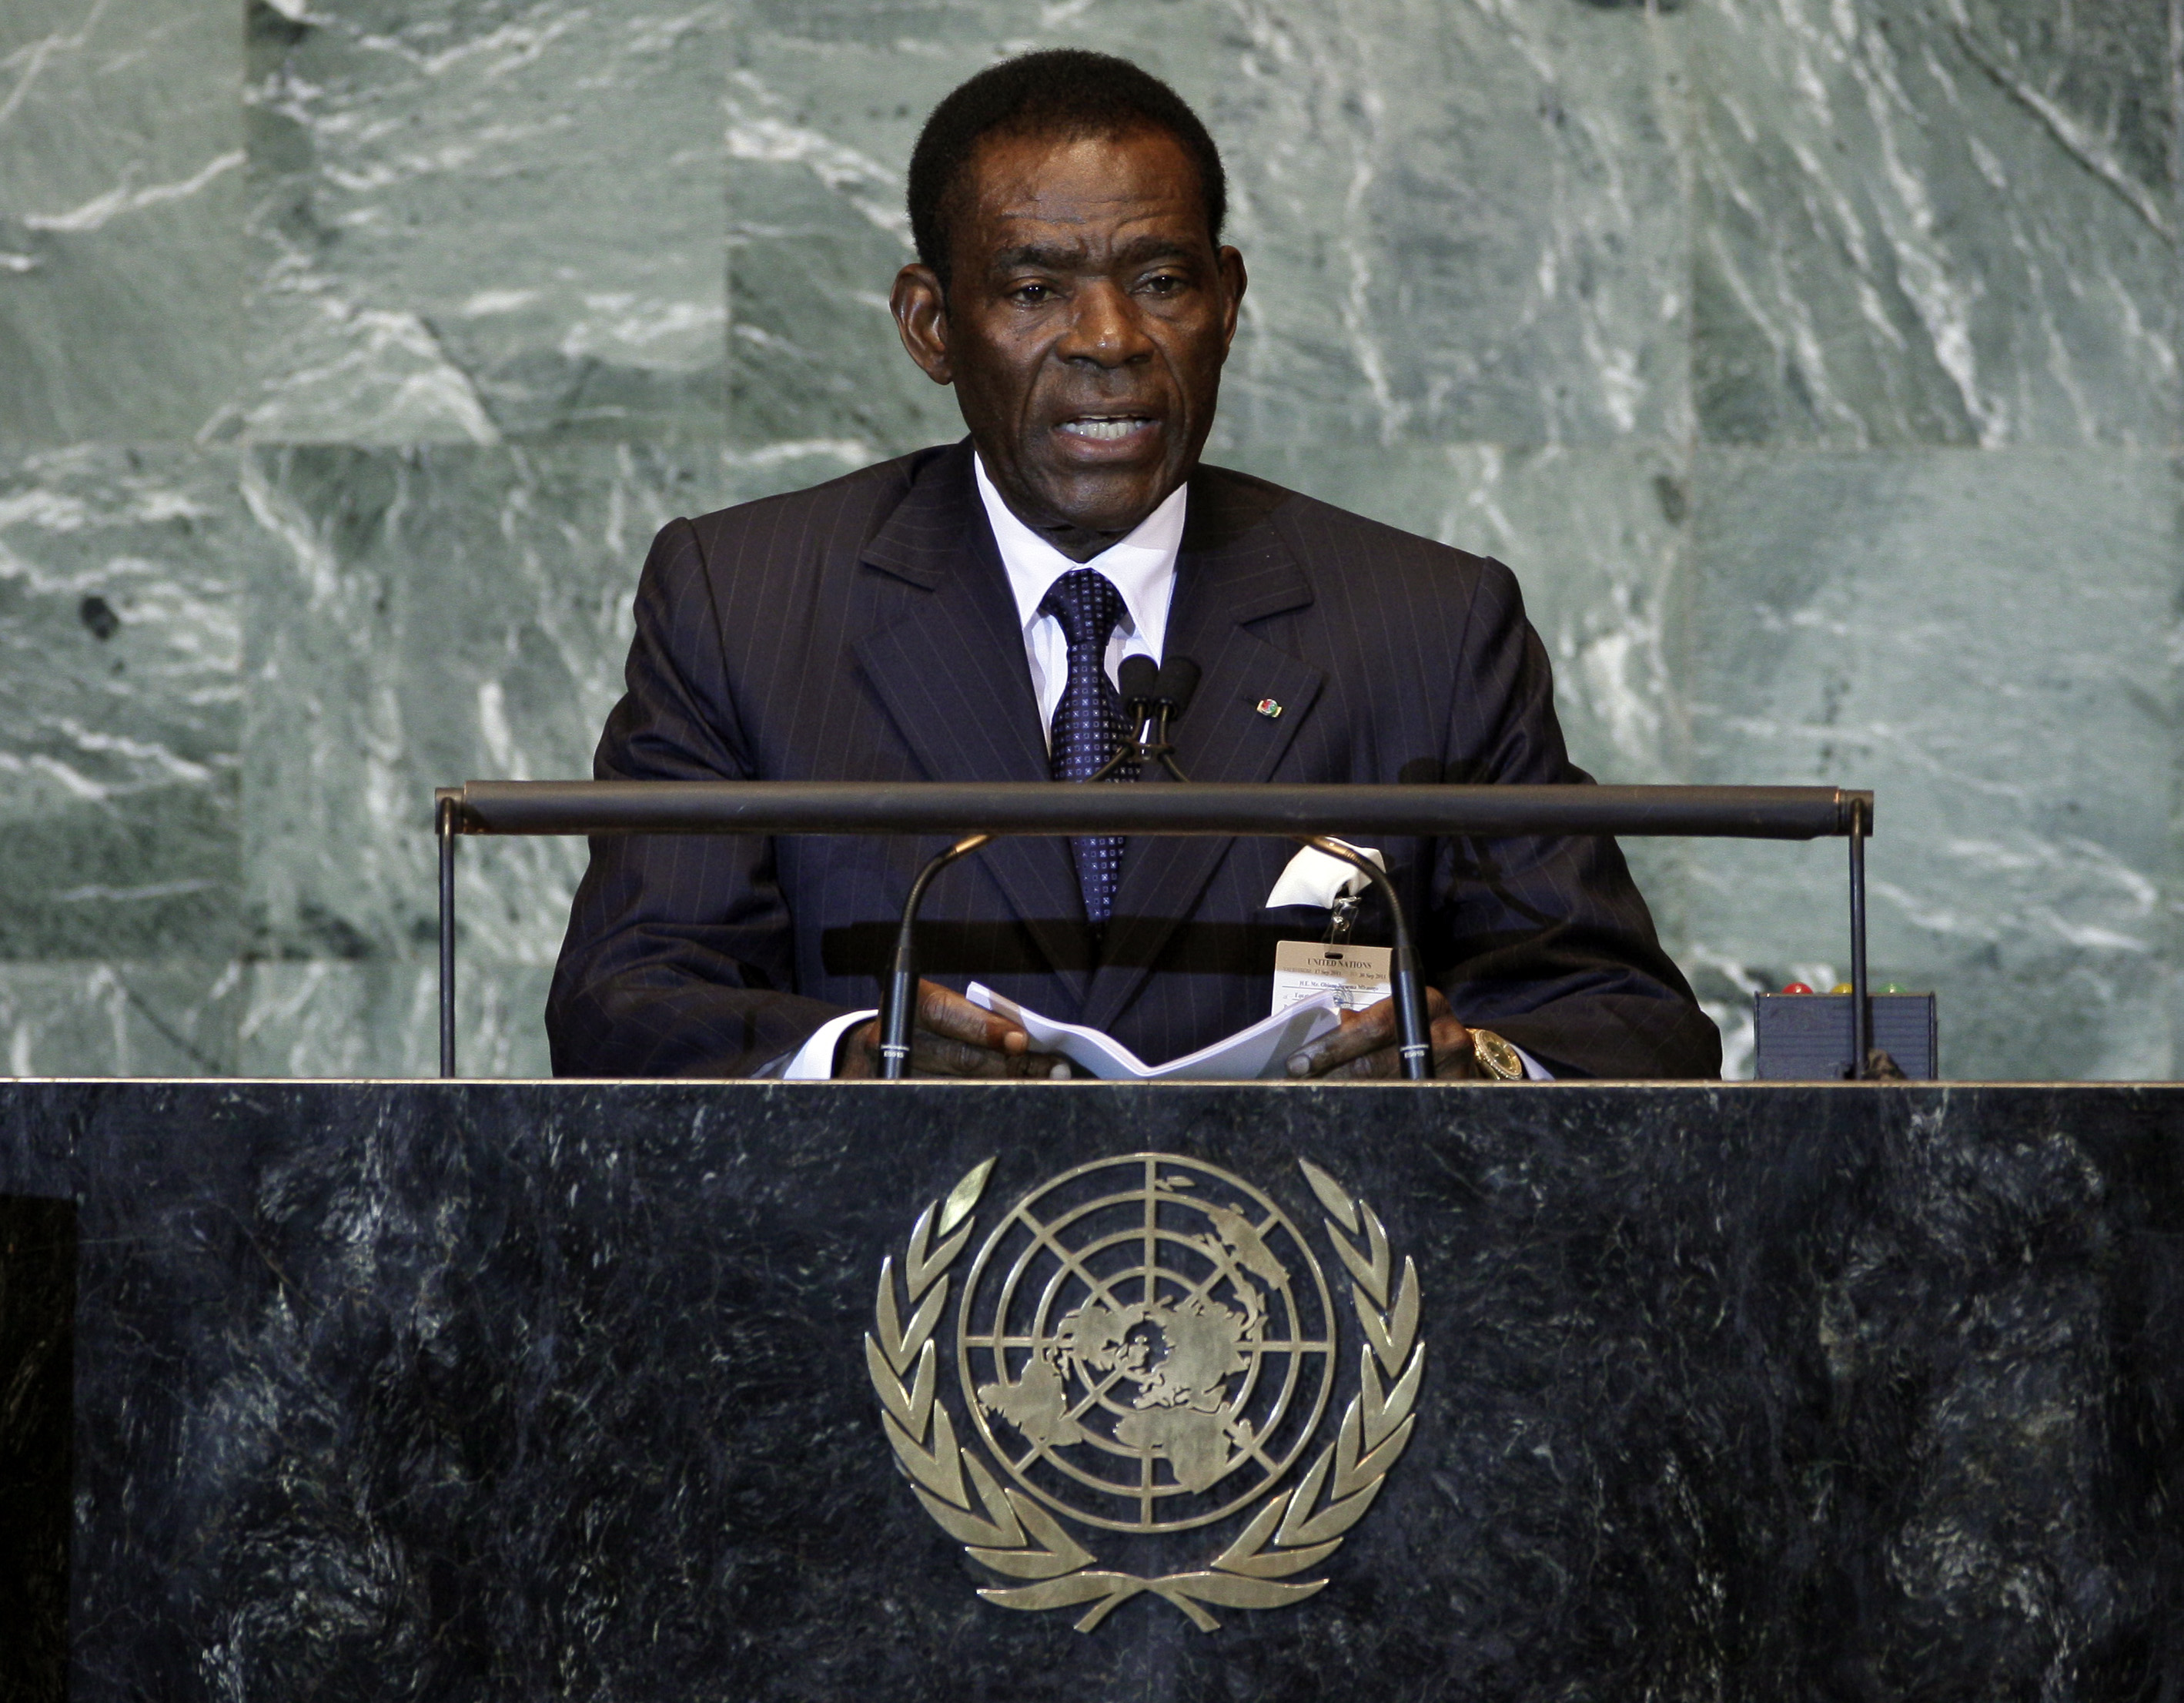 Teodoro Obiang Nguema Mbasogo - Ekvatorialguineas president sedan 1979 å han avsätta sin företrädare Francisco Macias Nguema och avrättade honom. Han backas upp av landets militär och oppositionen är knapp. I senaste valet 2009 fick Obiang 95% av rösterna